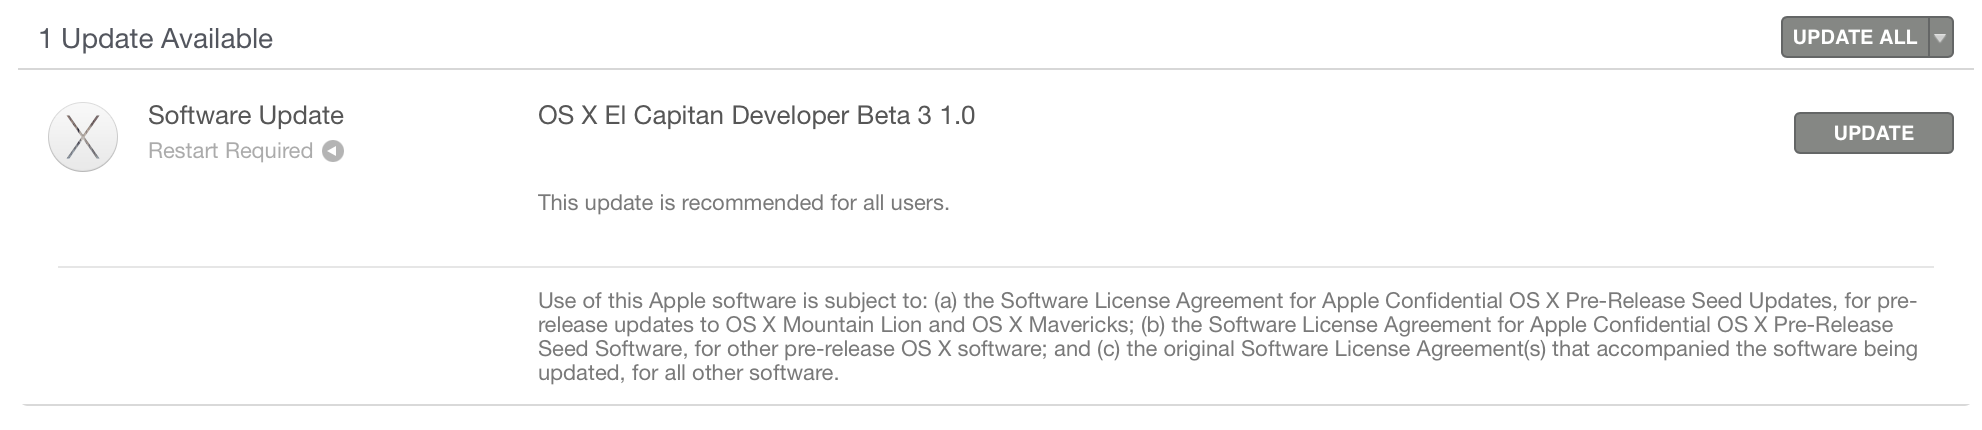 OS X El Capitan beta 3